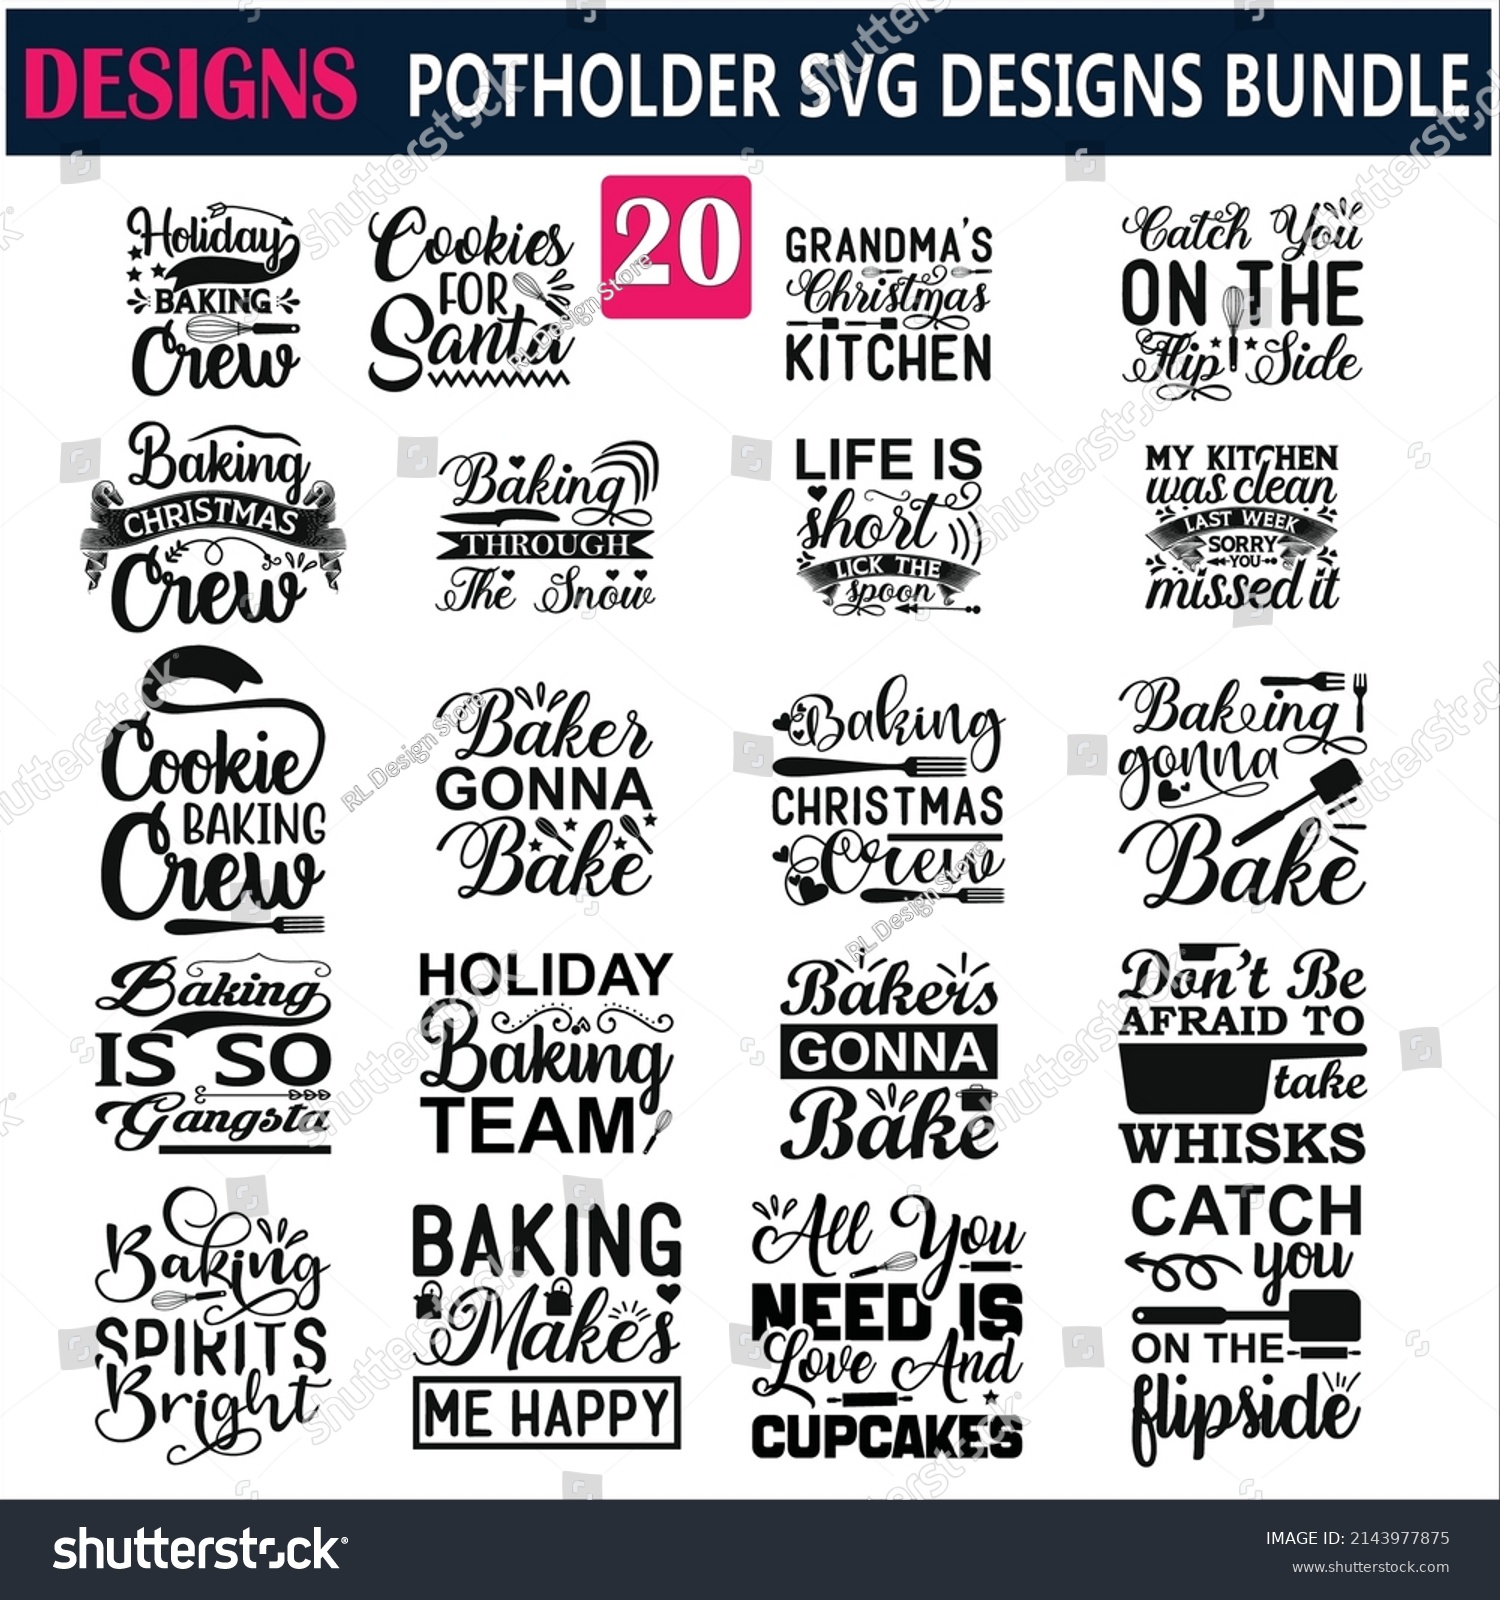 SVG of Potholder Quotes SVG Designs Bundle  Potholder quotes SVG cut files bundle, Potholder quotes t shirt designs bundle, about  Quotes   svg files for ,  teacher svg files, svg